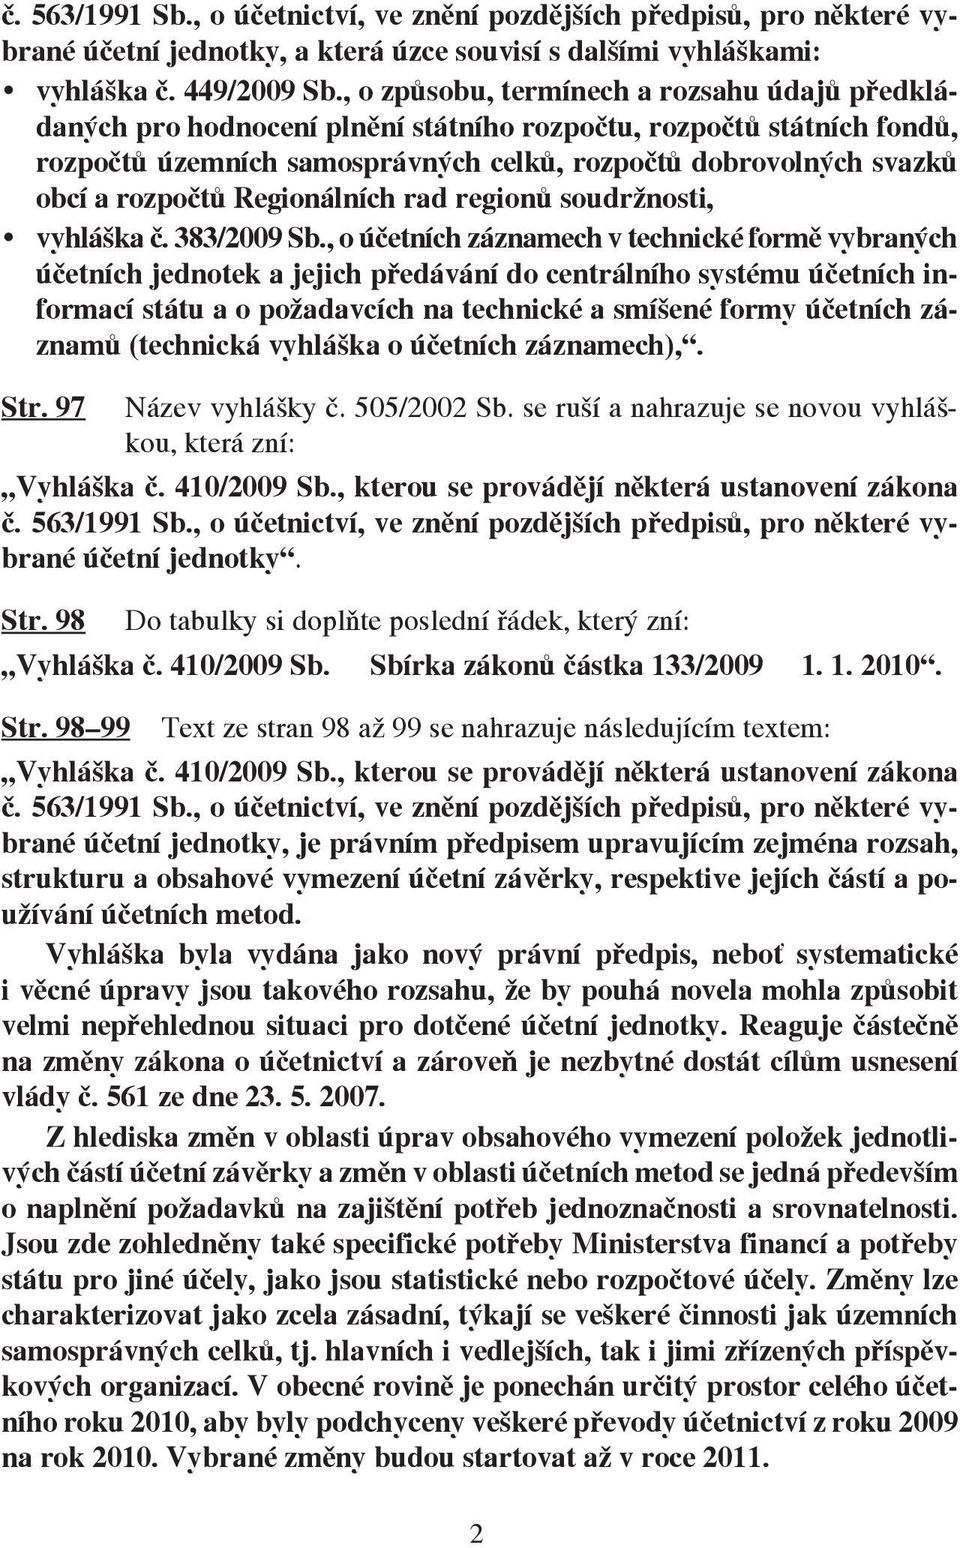 rozpočtů Regionálních rad regionů soudržnosti, vyhláška č. 383/2009 Sb.